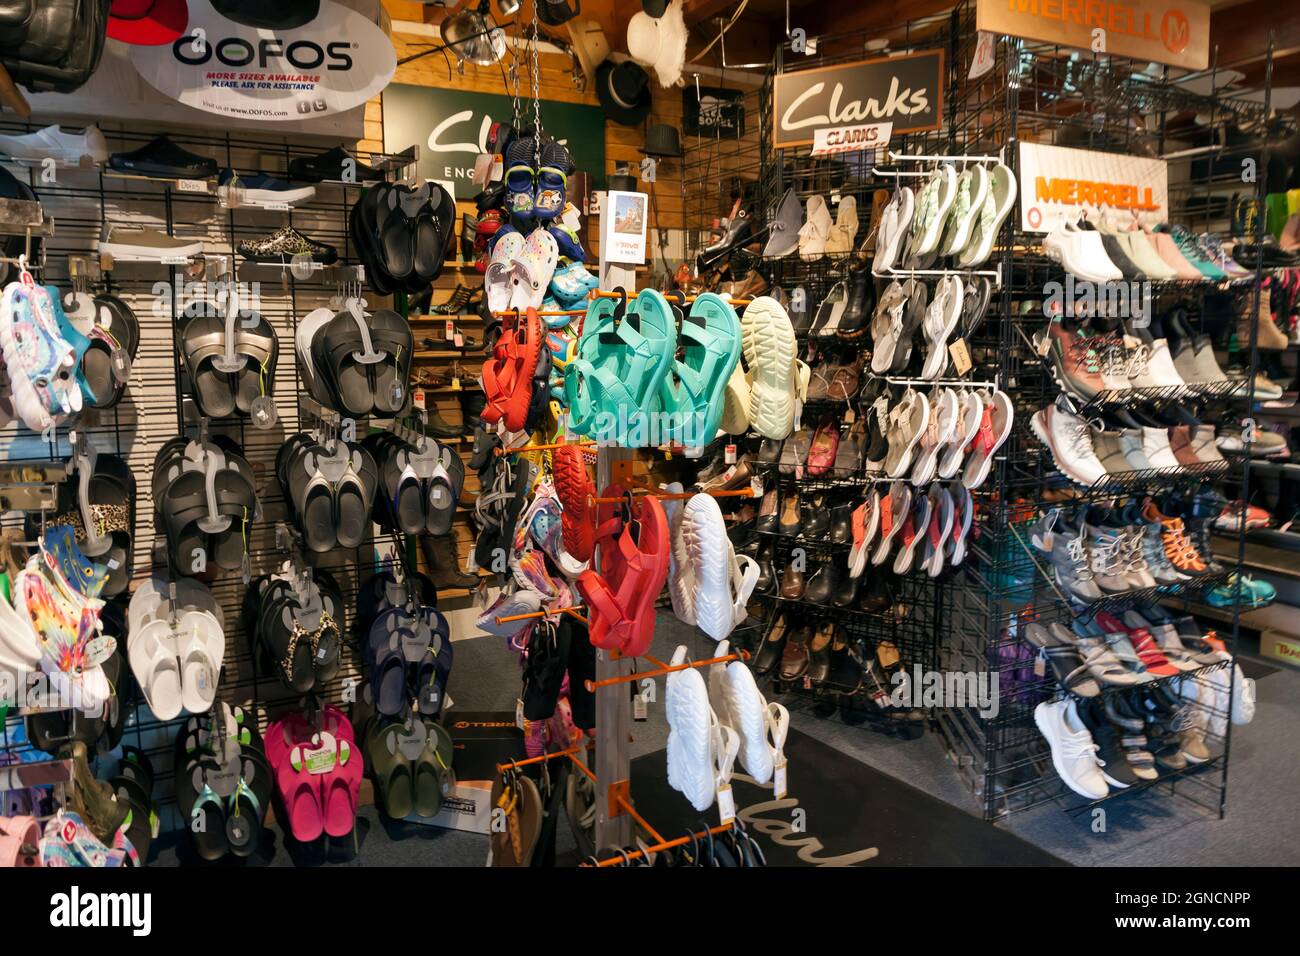 Intérieur de magasin de chaussures présentant des sandales, des chaussures et des baskets de différentes marques. Banque D'Images